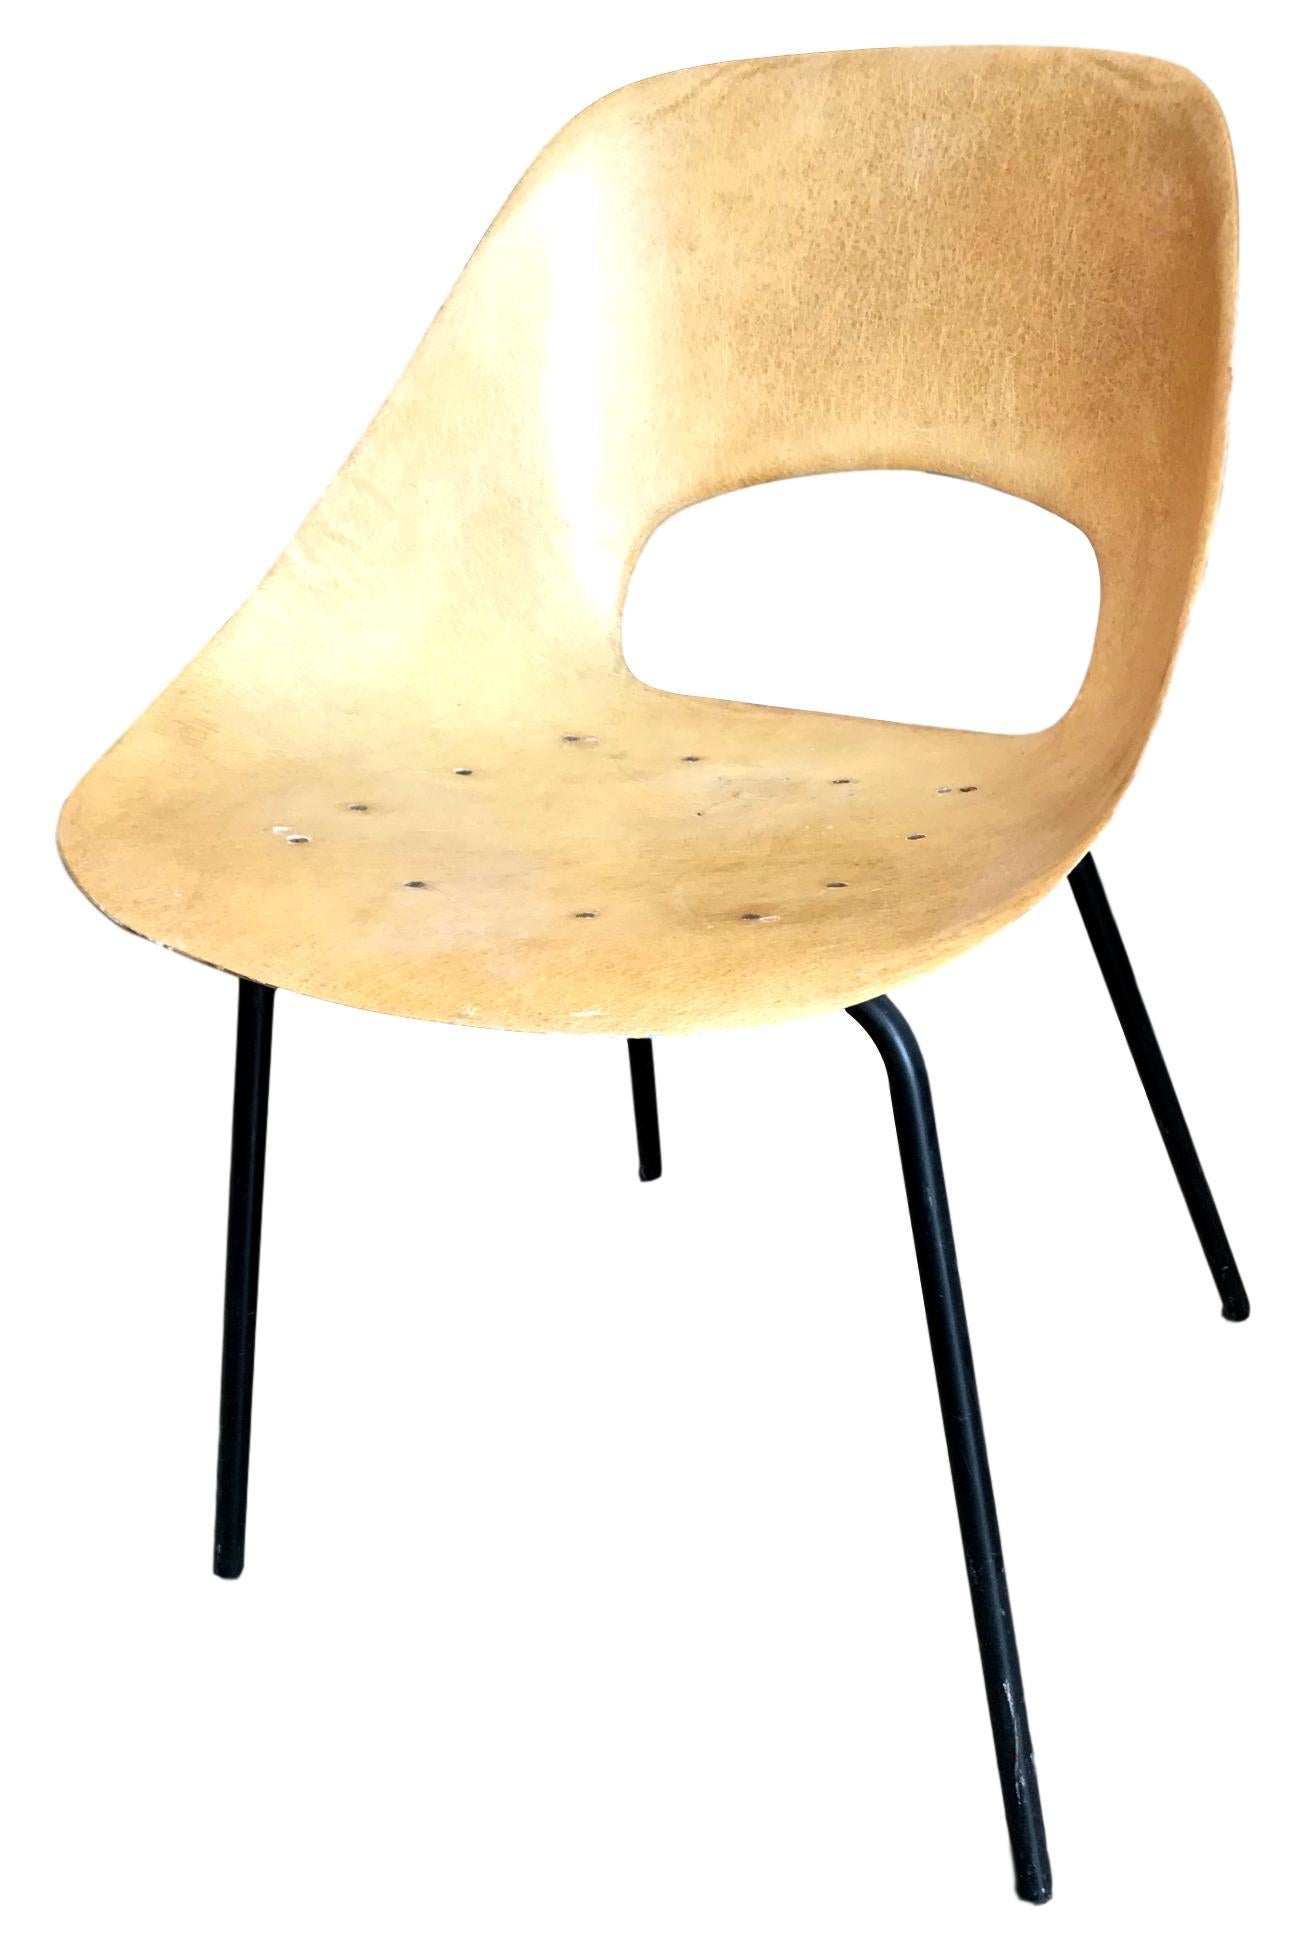 Magnifique chaise en fibre de verre de Pierre Guariche. Le cadre en fibre de verre crème repose sur quatre pieds en fer. Excellent état vintage et beau design. Superbe pièce indépendante. Fantastique pièce de design à collectionner.


